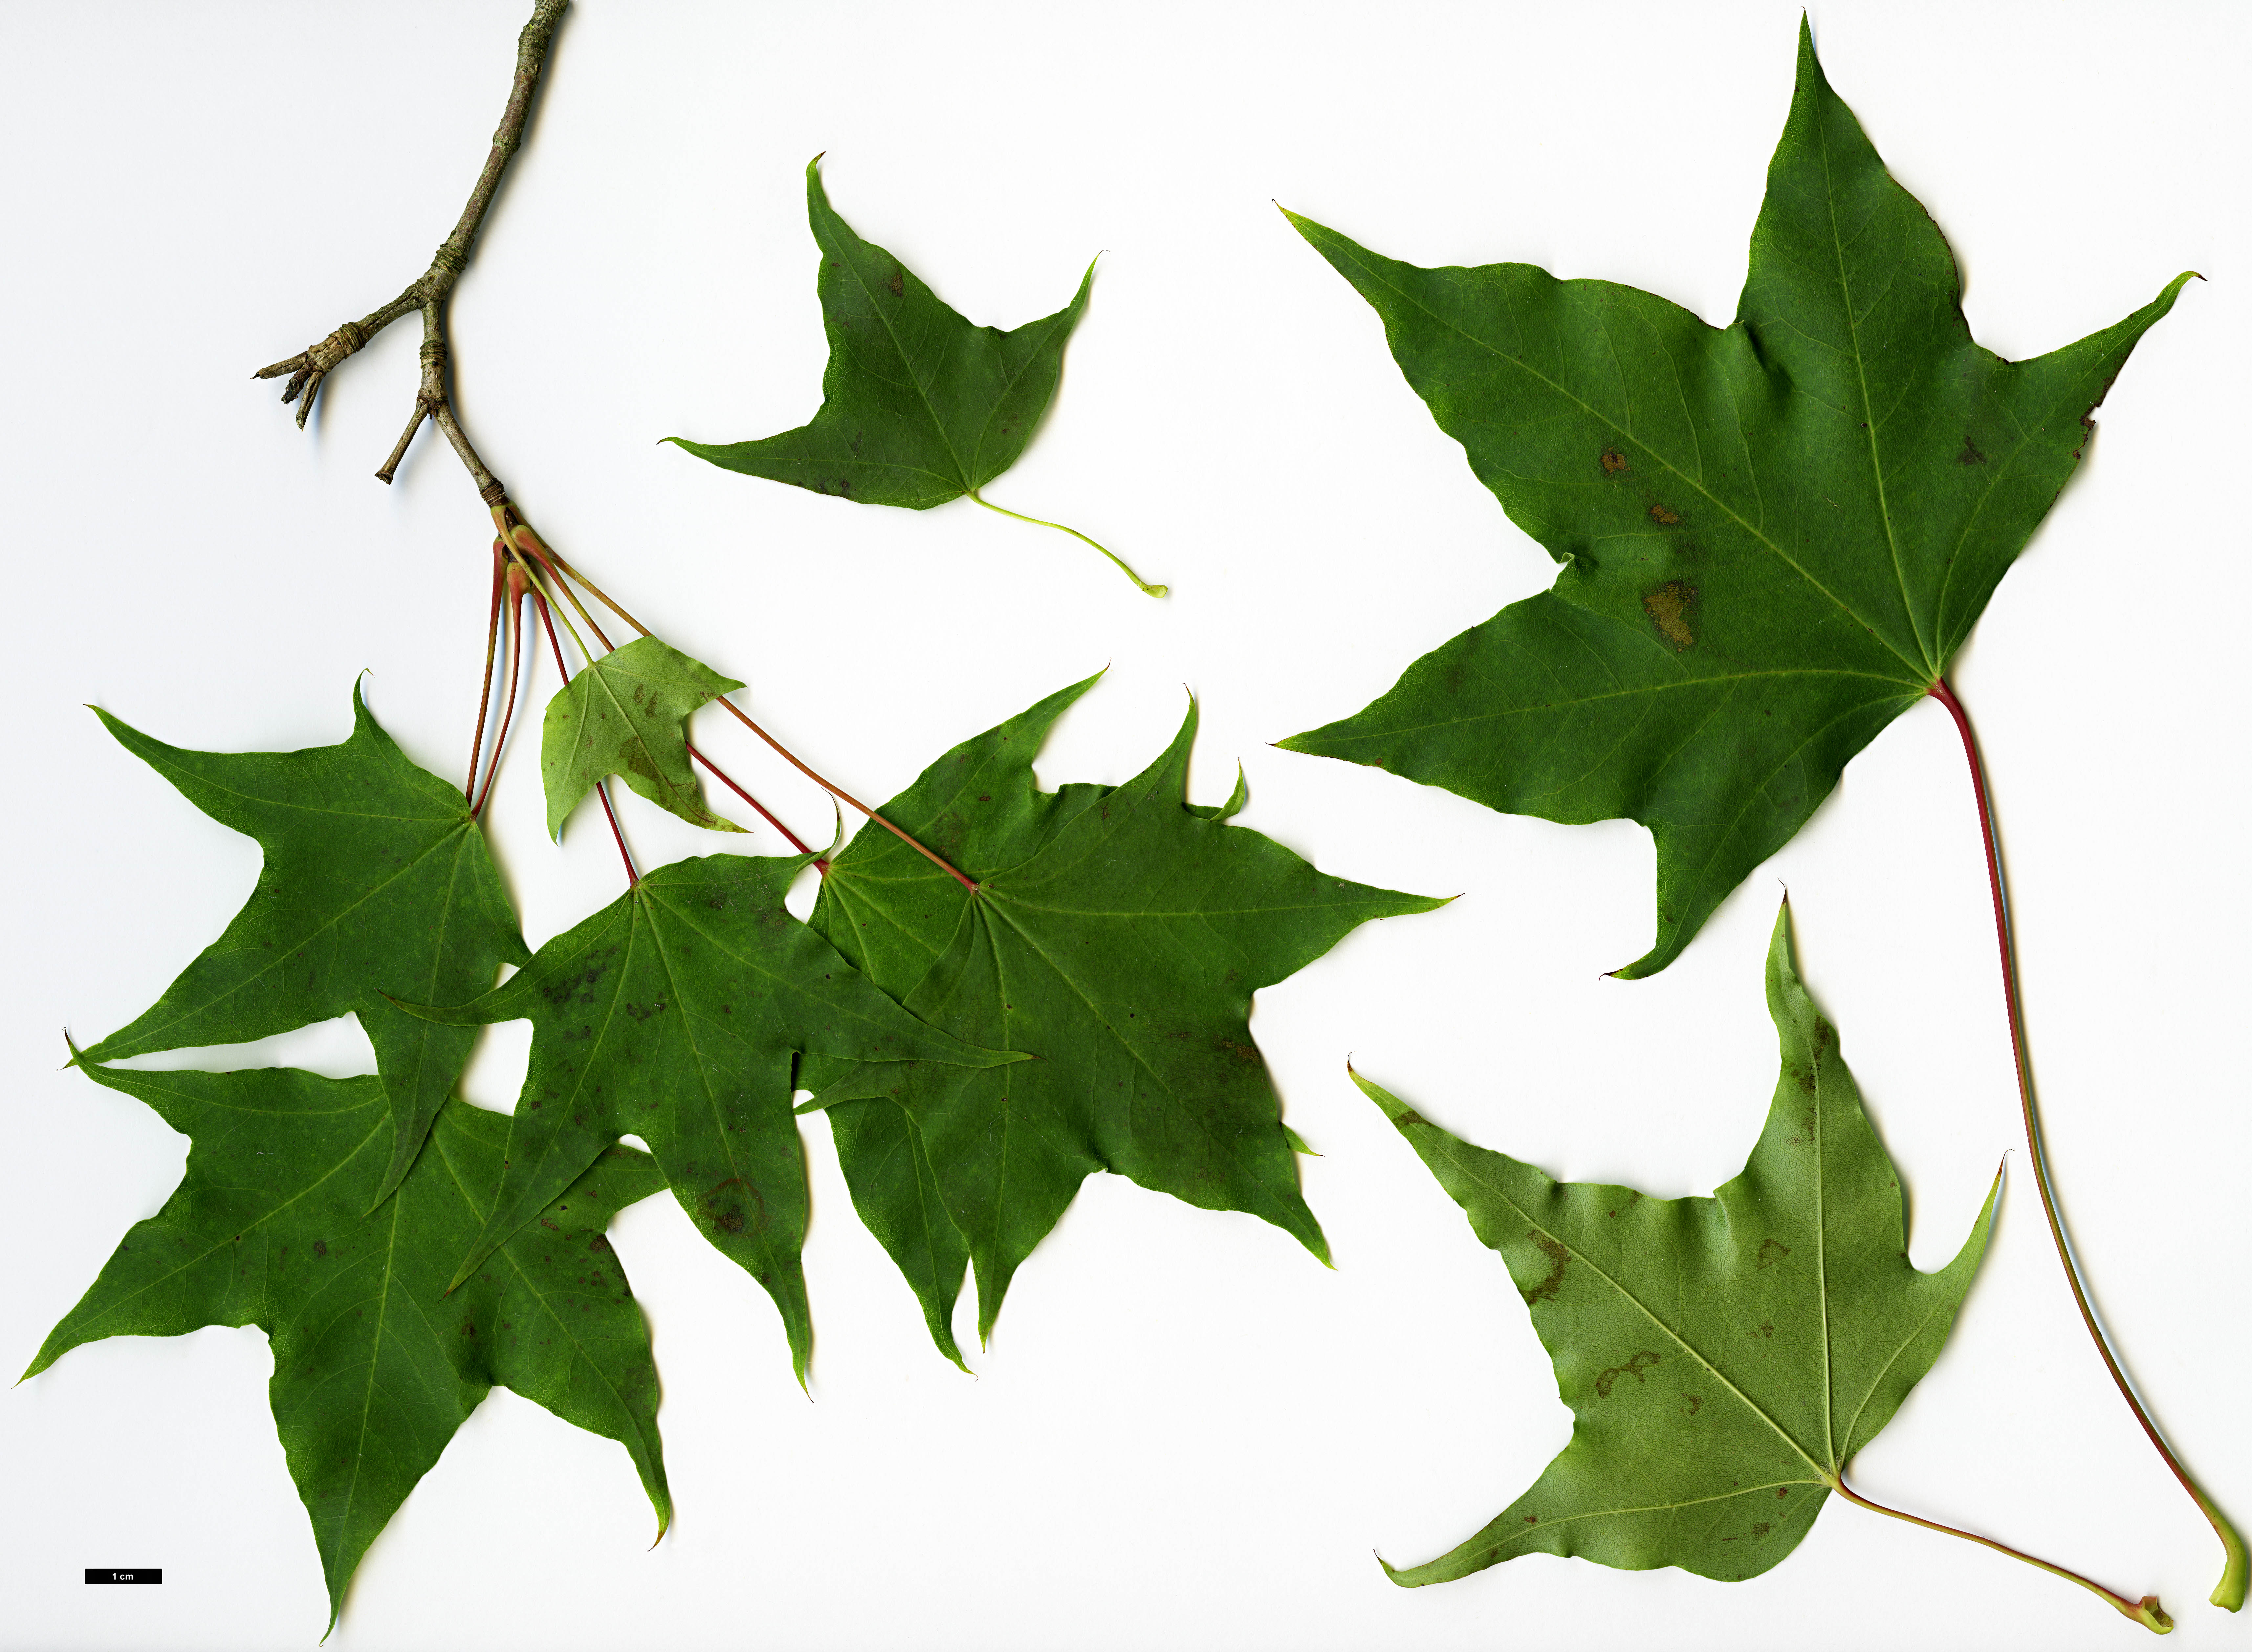 High resolution image: Family: Sapindaceae - Genus: Acer - Taxon: pictum - SpeciesSub: subsp. macropterum